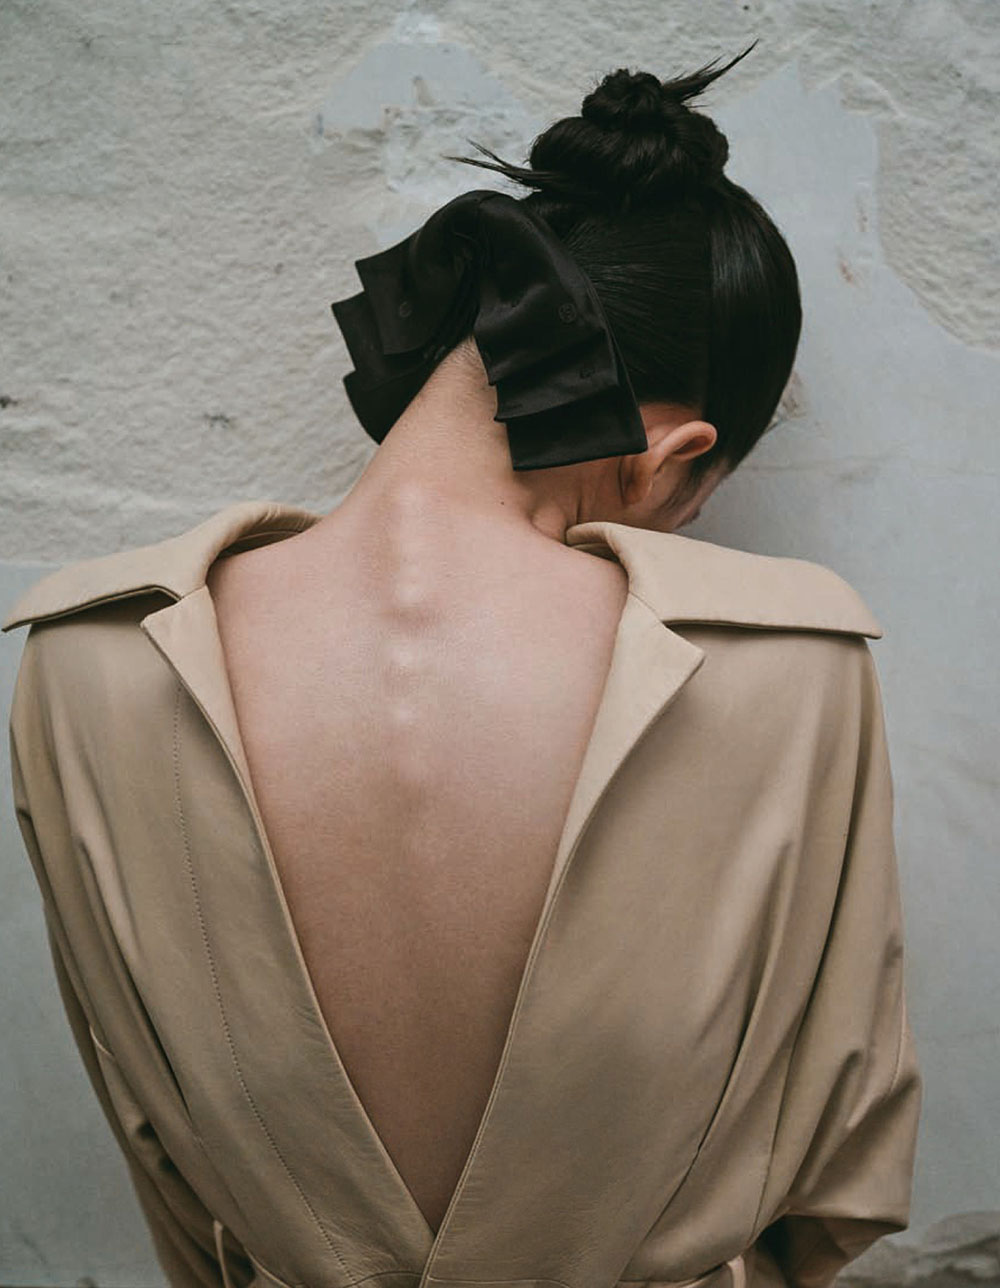 Qun Ye by Xiaowei Xu for Vogue China November 2020